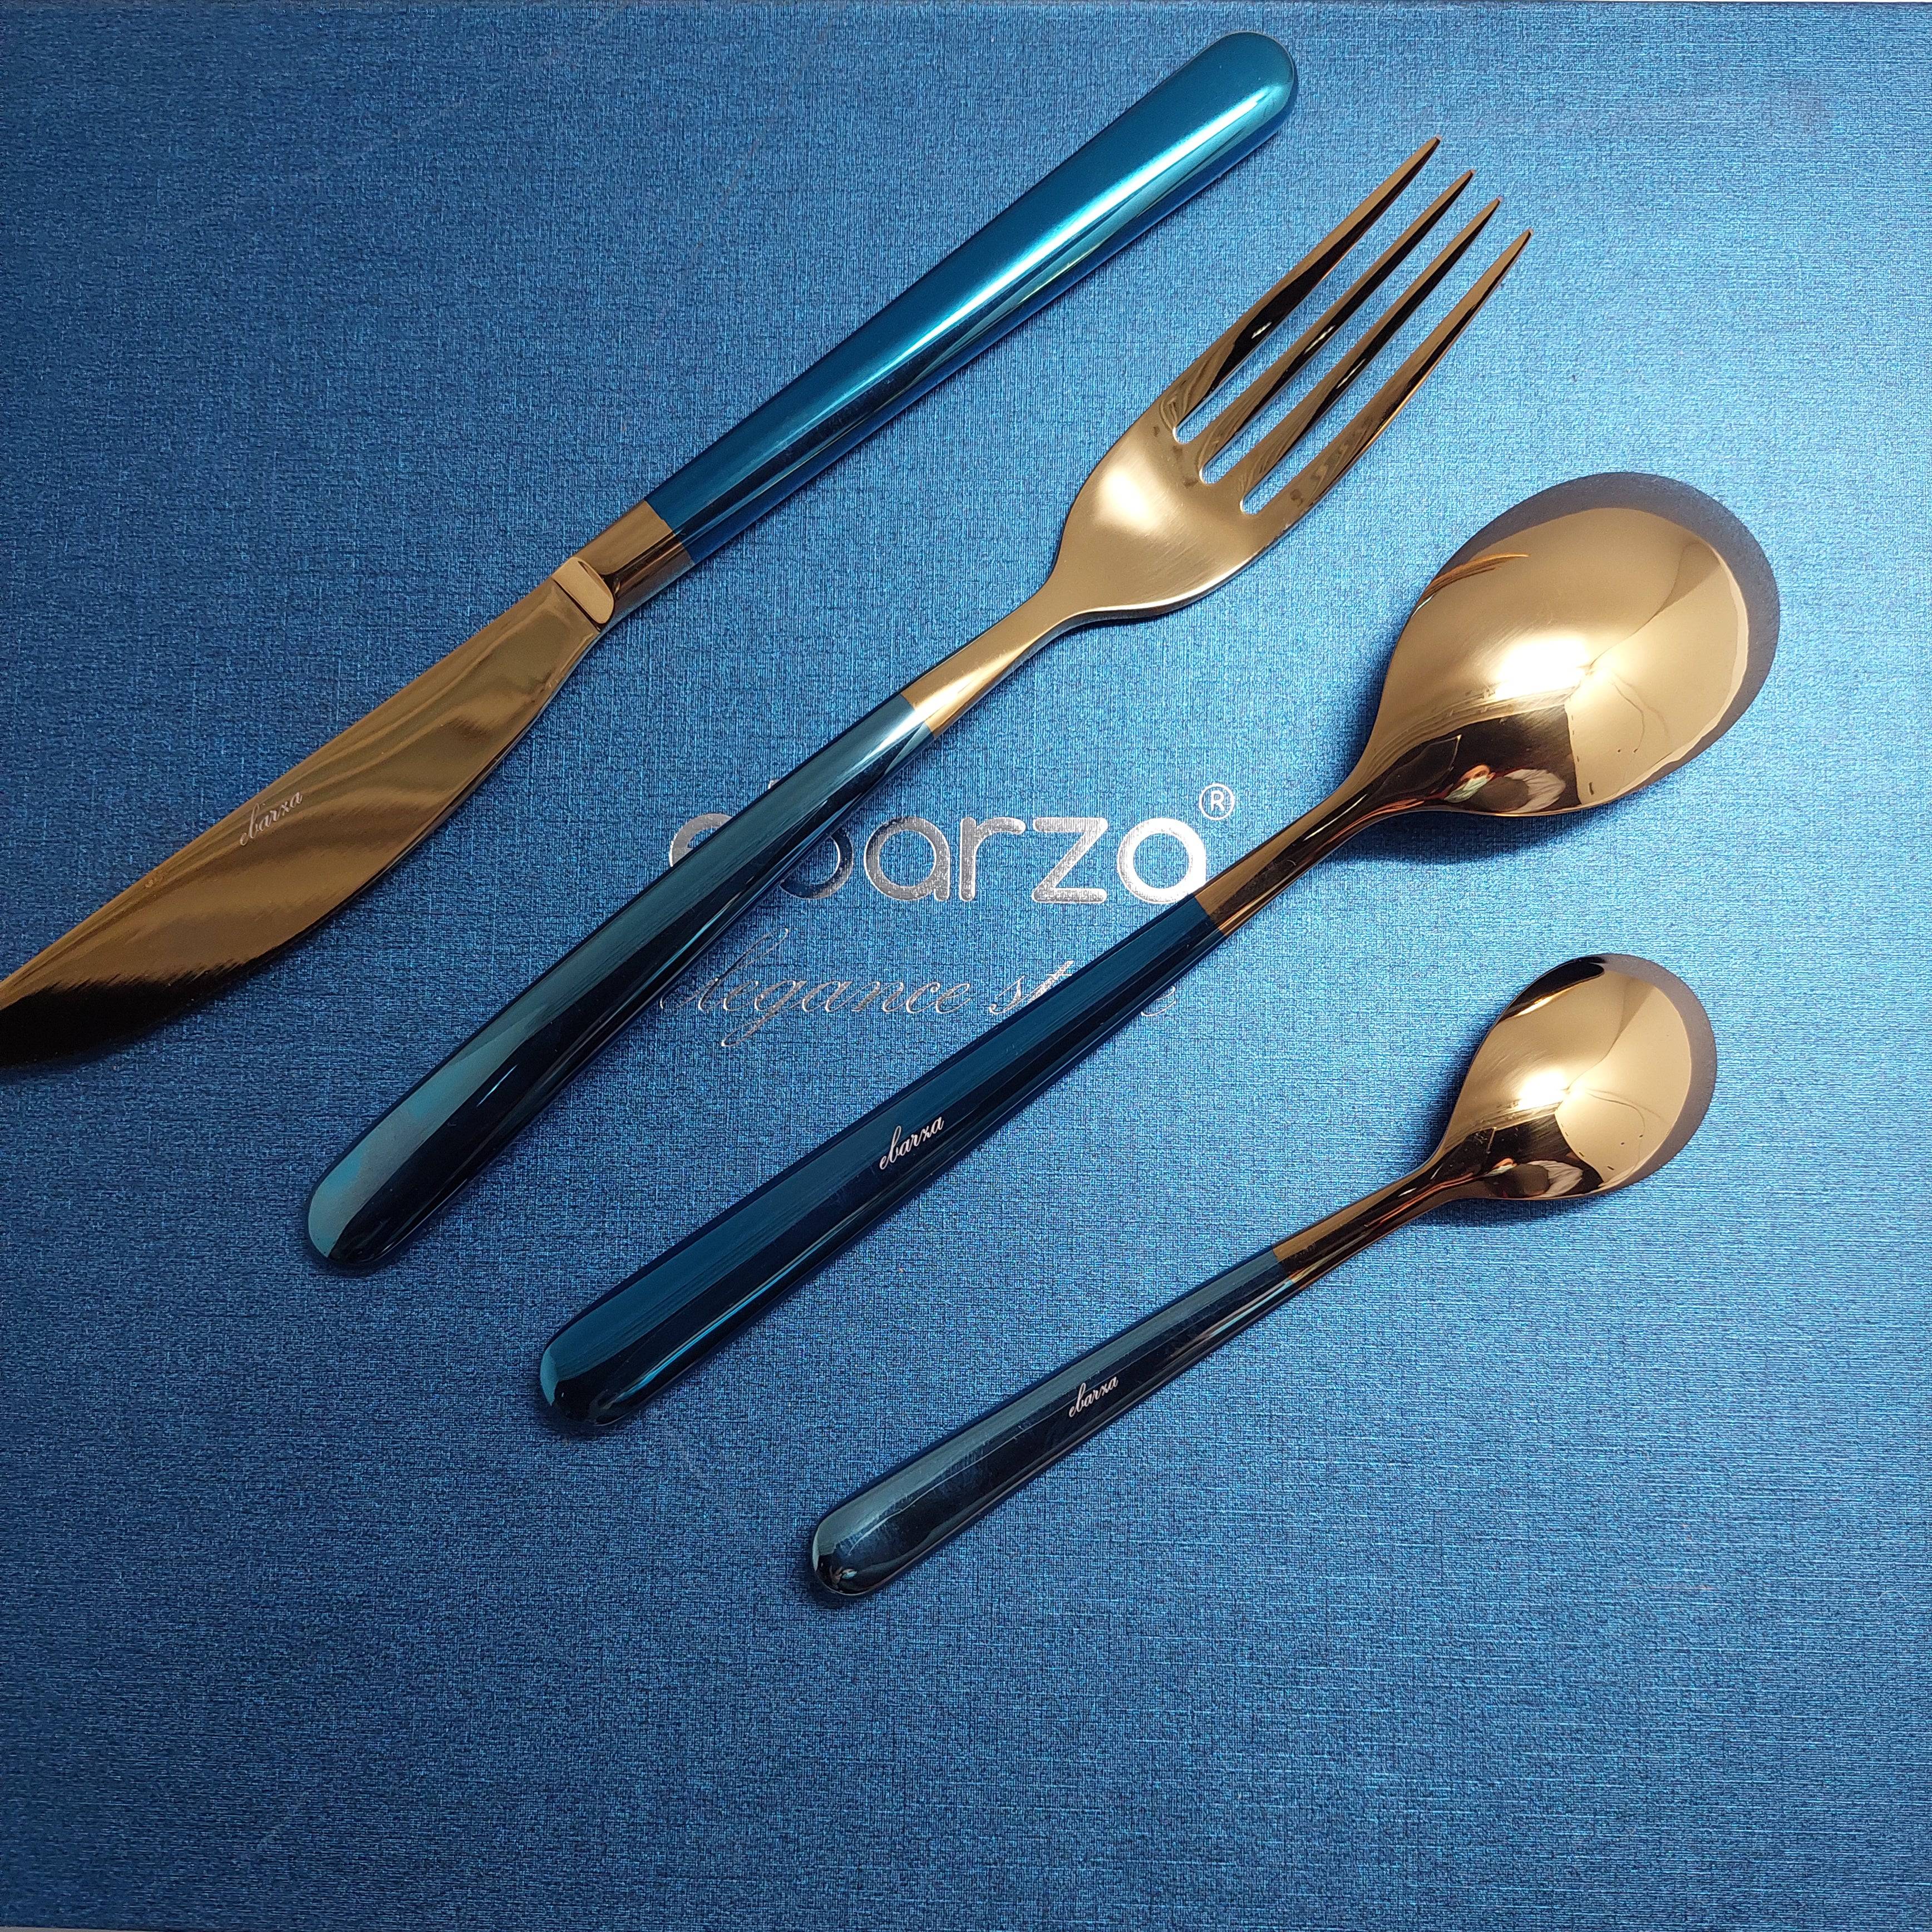 16 Pieces Lyon Cutlery Set 6013Bg -  Cutlery Sets | طقم أدوات مائدة ليون 16 قطعة - ebarza Furniture UAE | Shop Modern Furniture in Abu Dhabi & Dubai - مفروشات ايبازرا في الامارات | تسوق اثاث عصري وديكورات مميزة في دبي وابوظبي